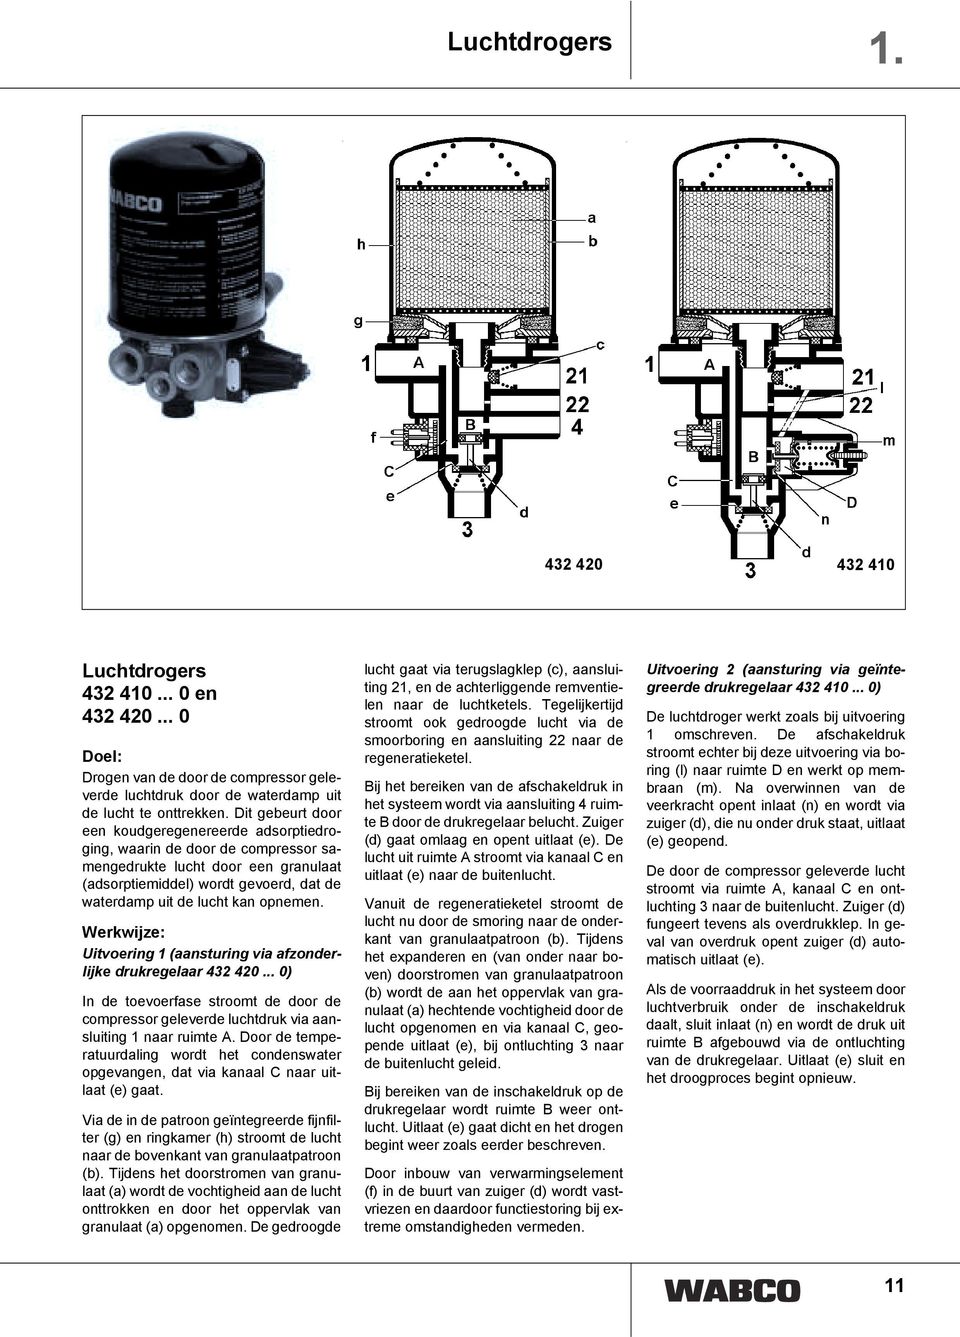 opnemen. Uitvoering 1 (aansturing via afzonderlijke drukregelaar 432 420... 0) In de toevoerfase stroomt de door de compressor geleverde luchtdruk via aansluiting 1 naar ruimte A.